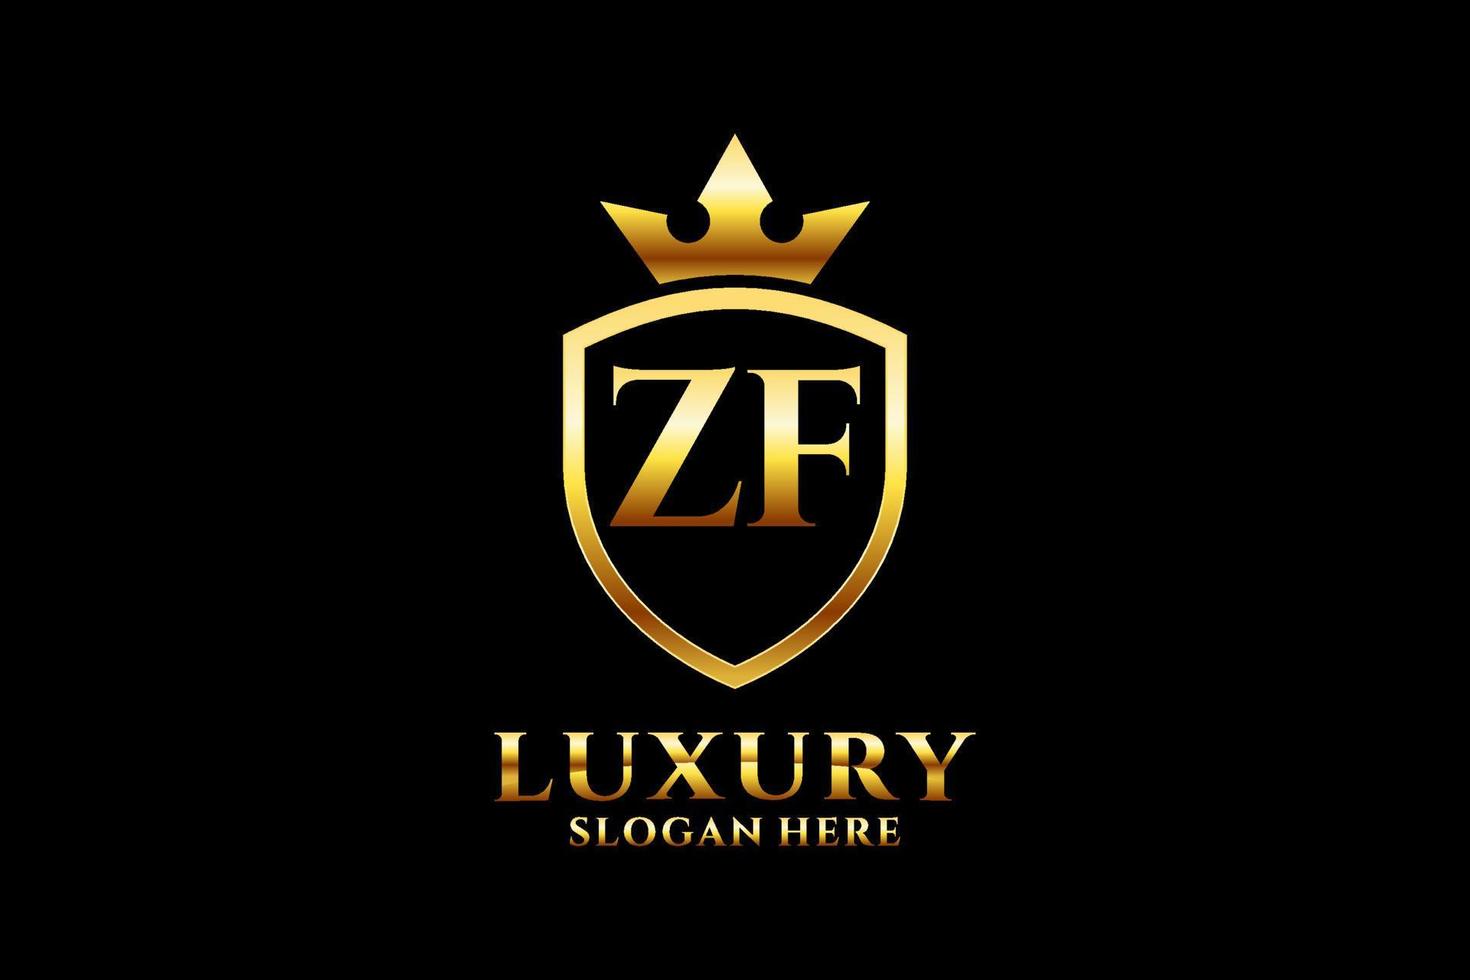 Initial zf elegantes Luxus-Monogramm-Logo oder Abzeichen-Vorlage mit Schriftrollen und Königskrone – perfekt für luxuriöse Branding-Projekte vektor